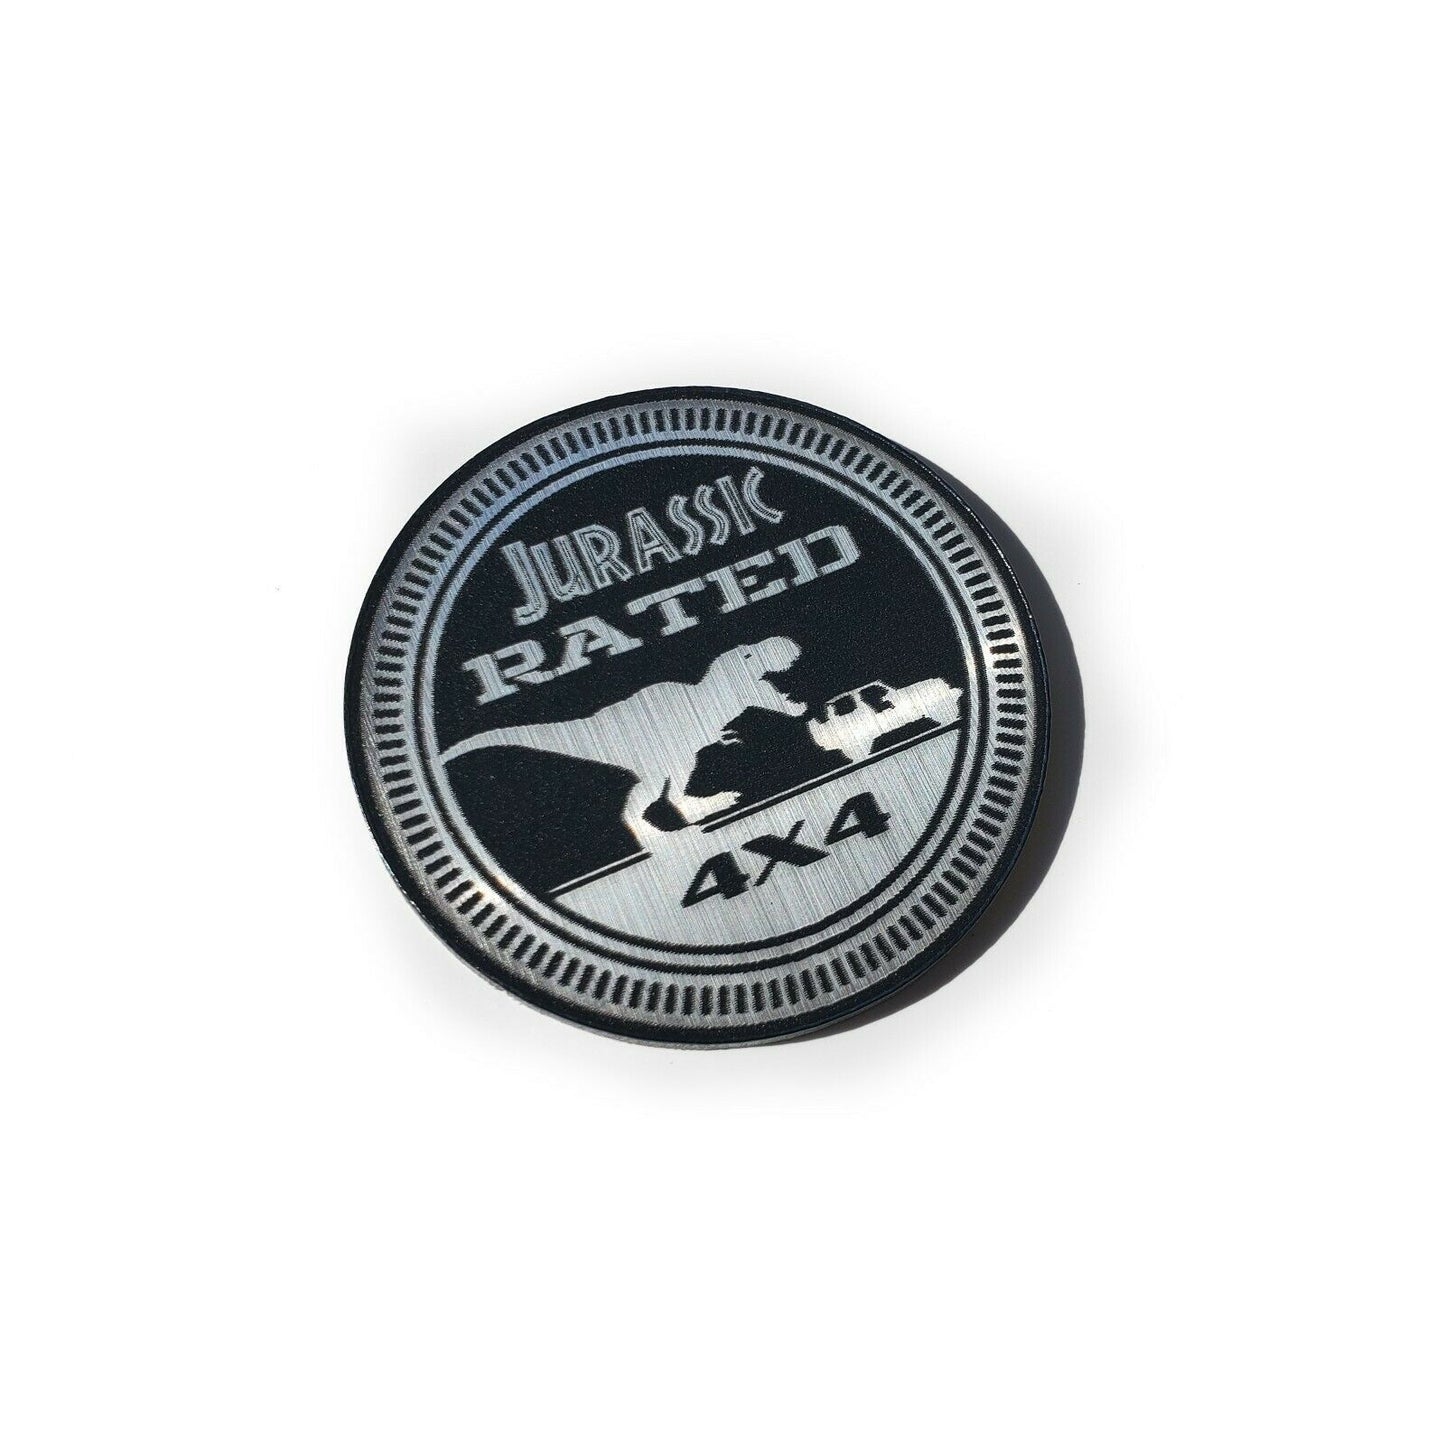 One (1) JURASSIC Rated Fender Badges fits JEEP WRANGLER YJ JL JK TJ CJ emblems